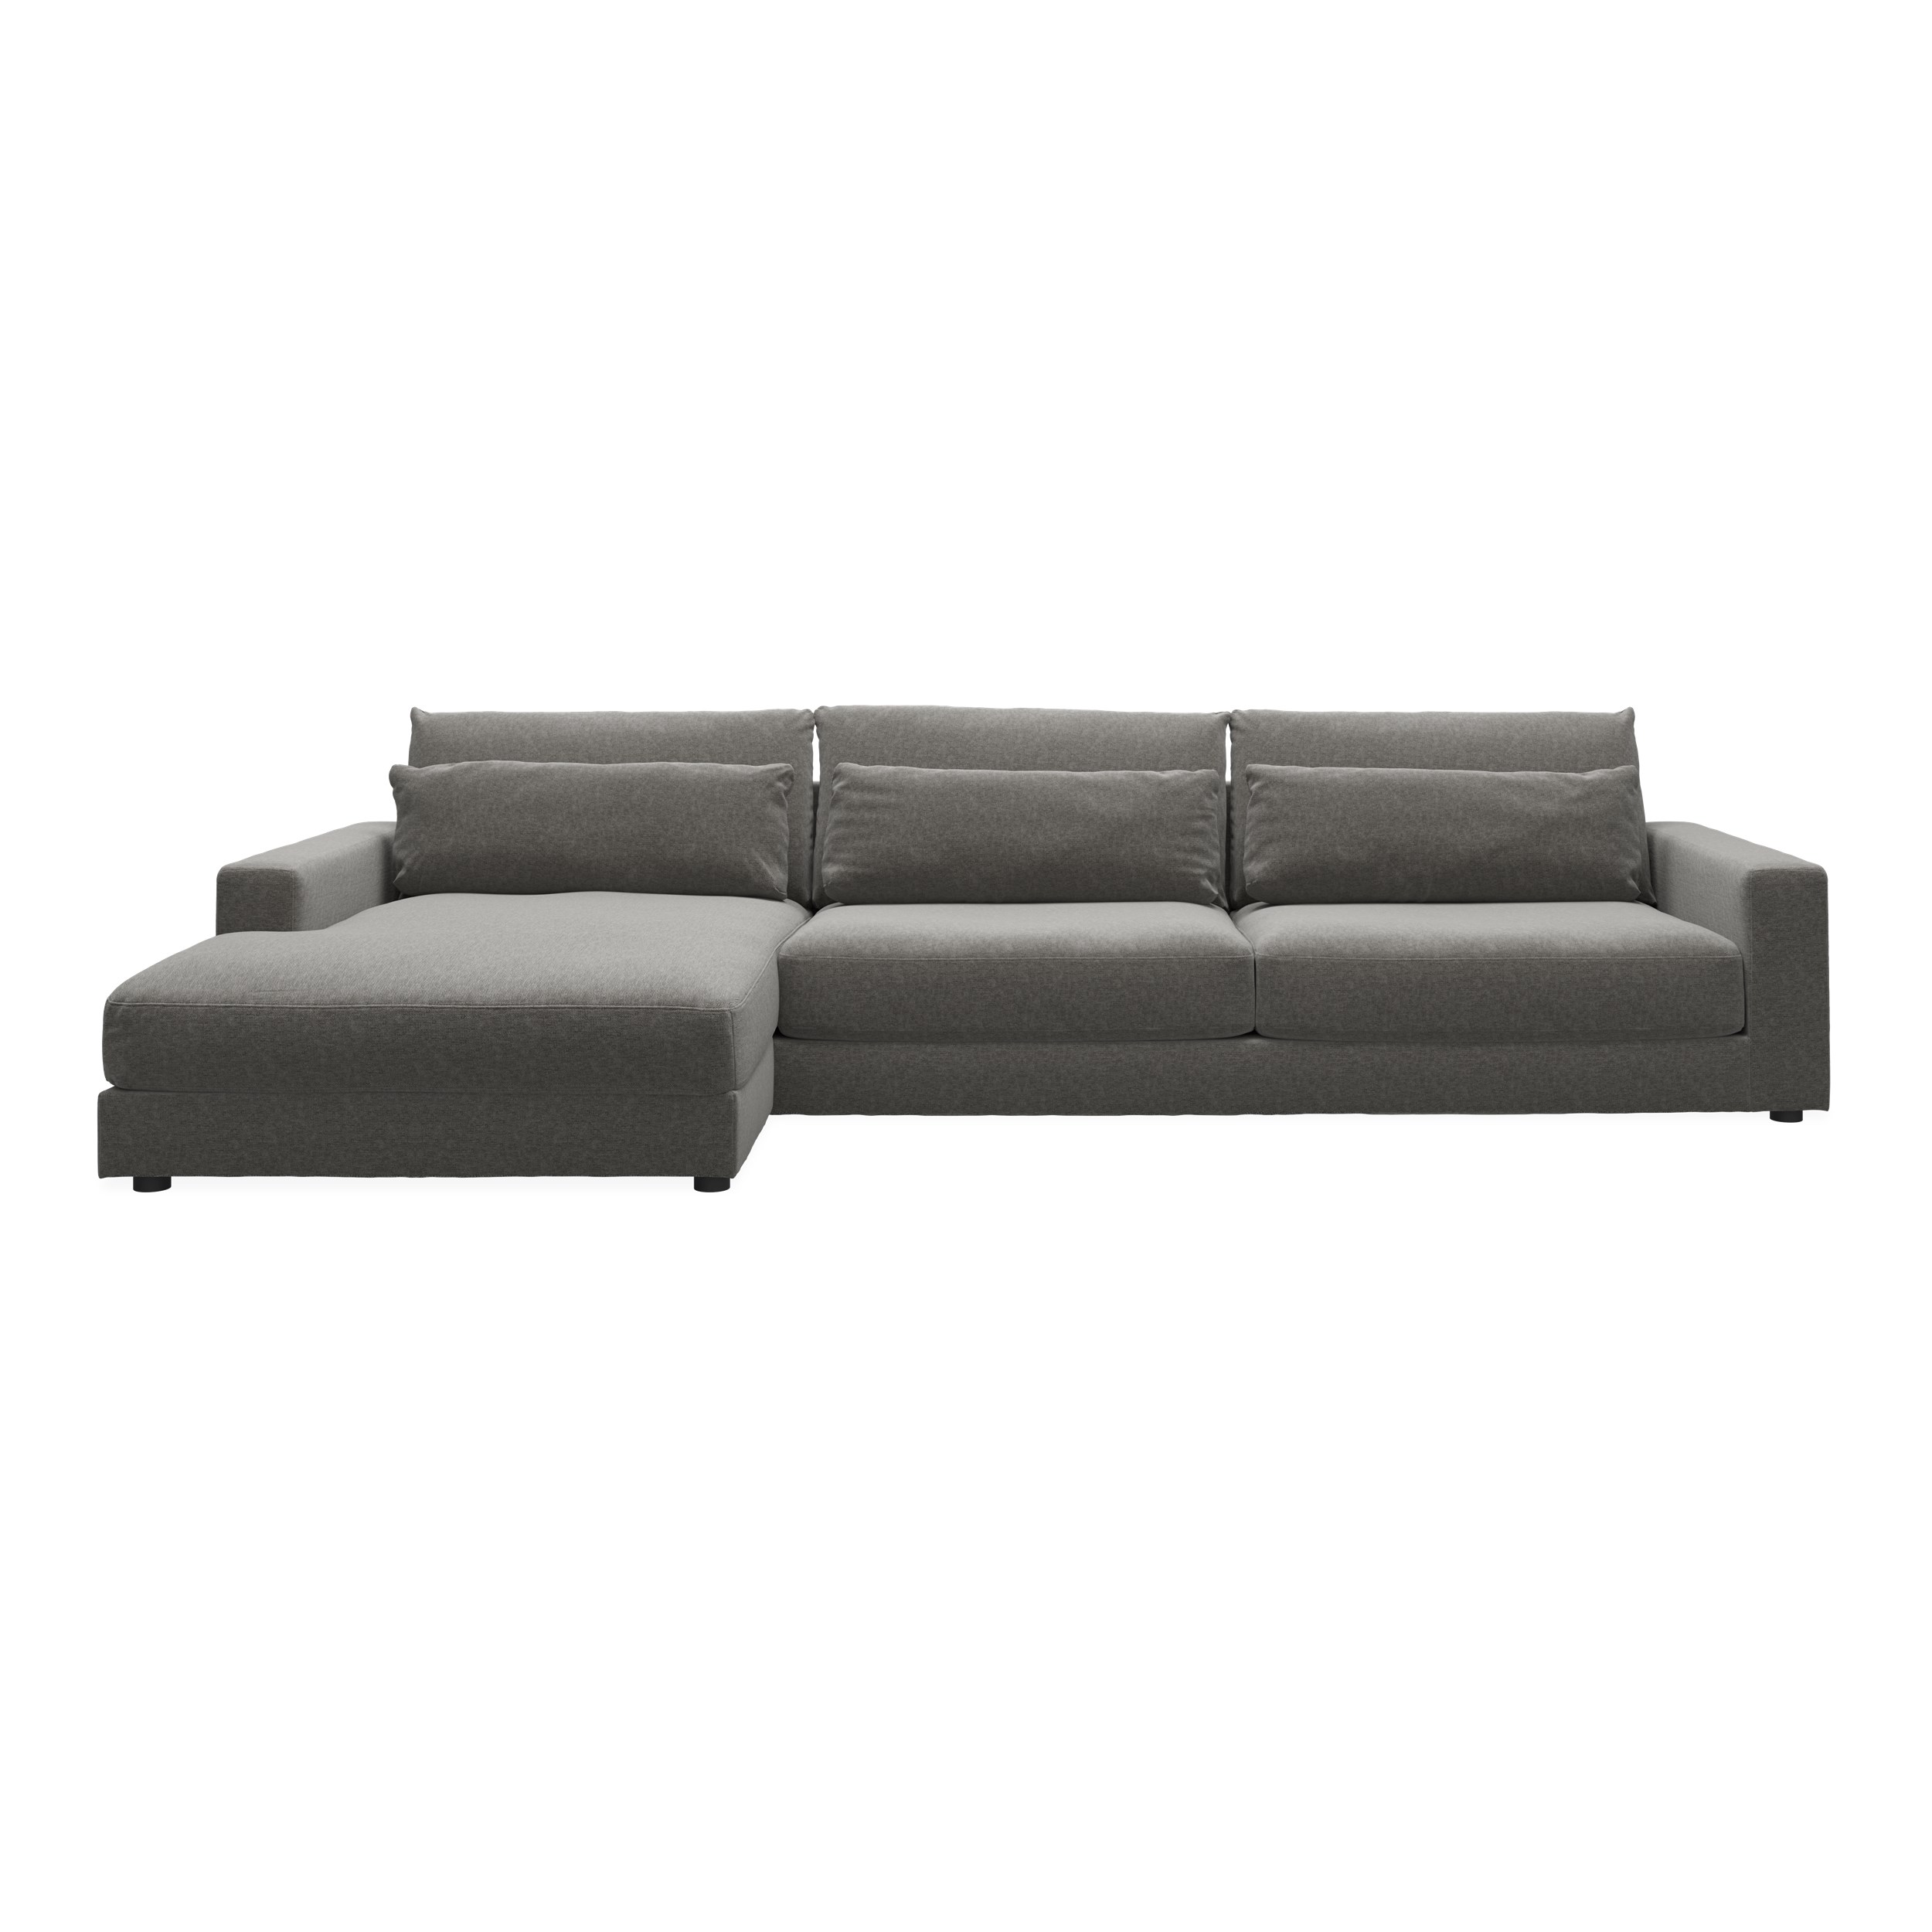 Halmstad vänstervänd soffa med schäslong - Danny 18 Grey textil och ben i svart plast